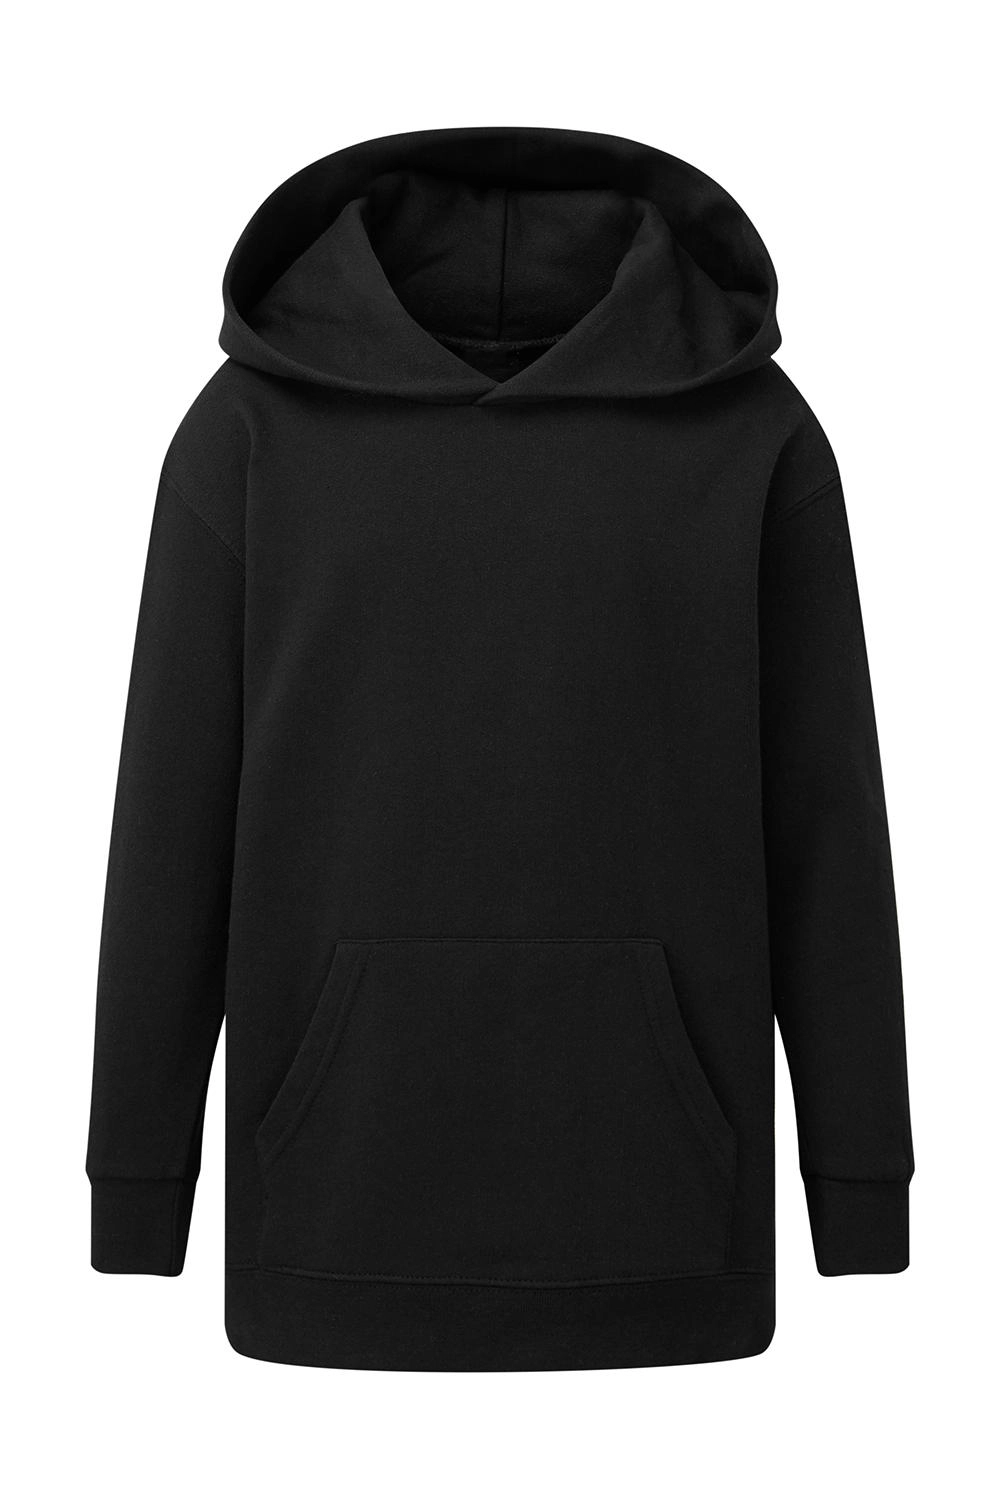 Hooded Sweatshirt Kids zum Besticken und Bedrucken in der Farbe Dark Black mit Ihren Logo, Schriftzug oder Motiv.